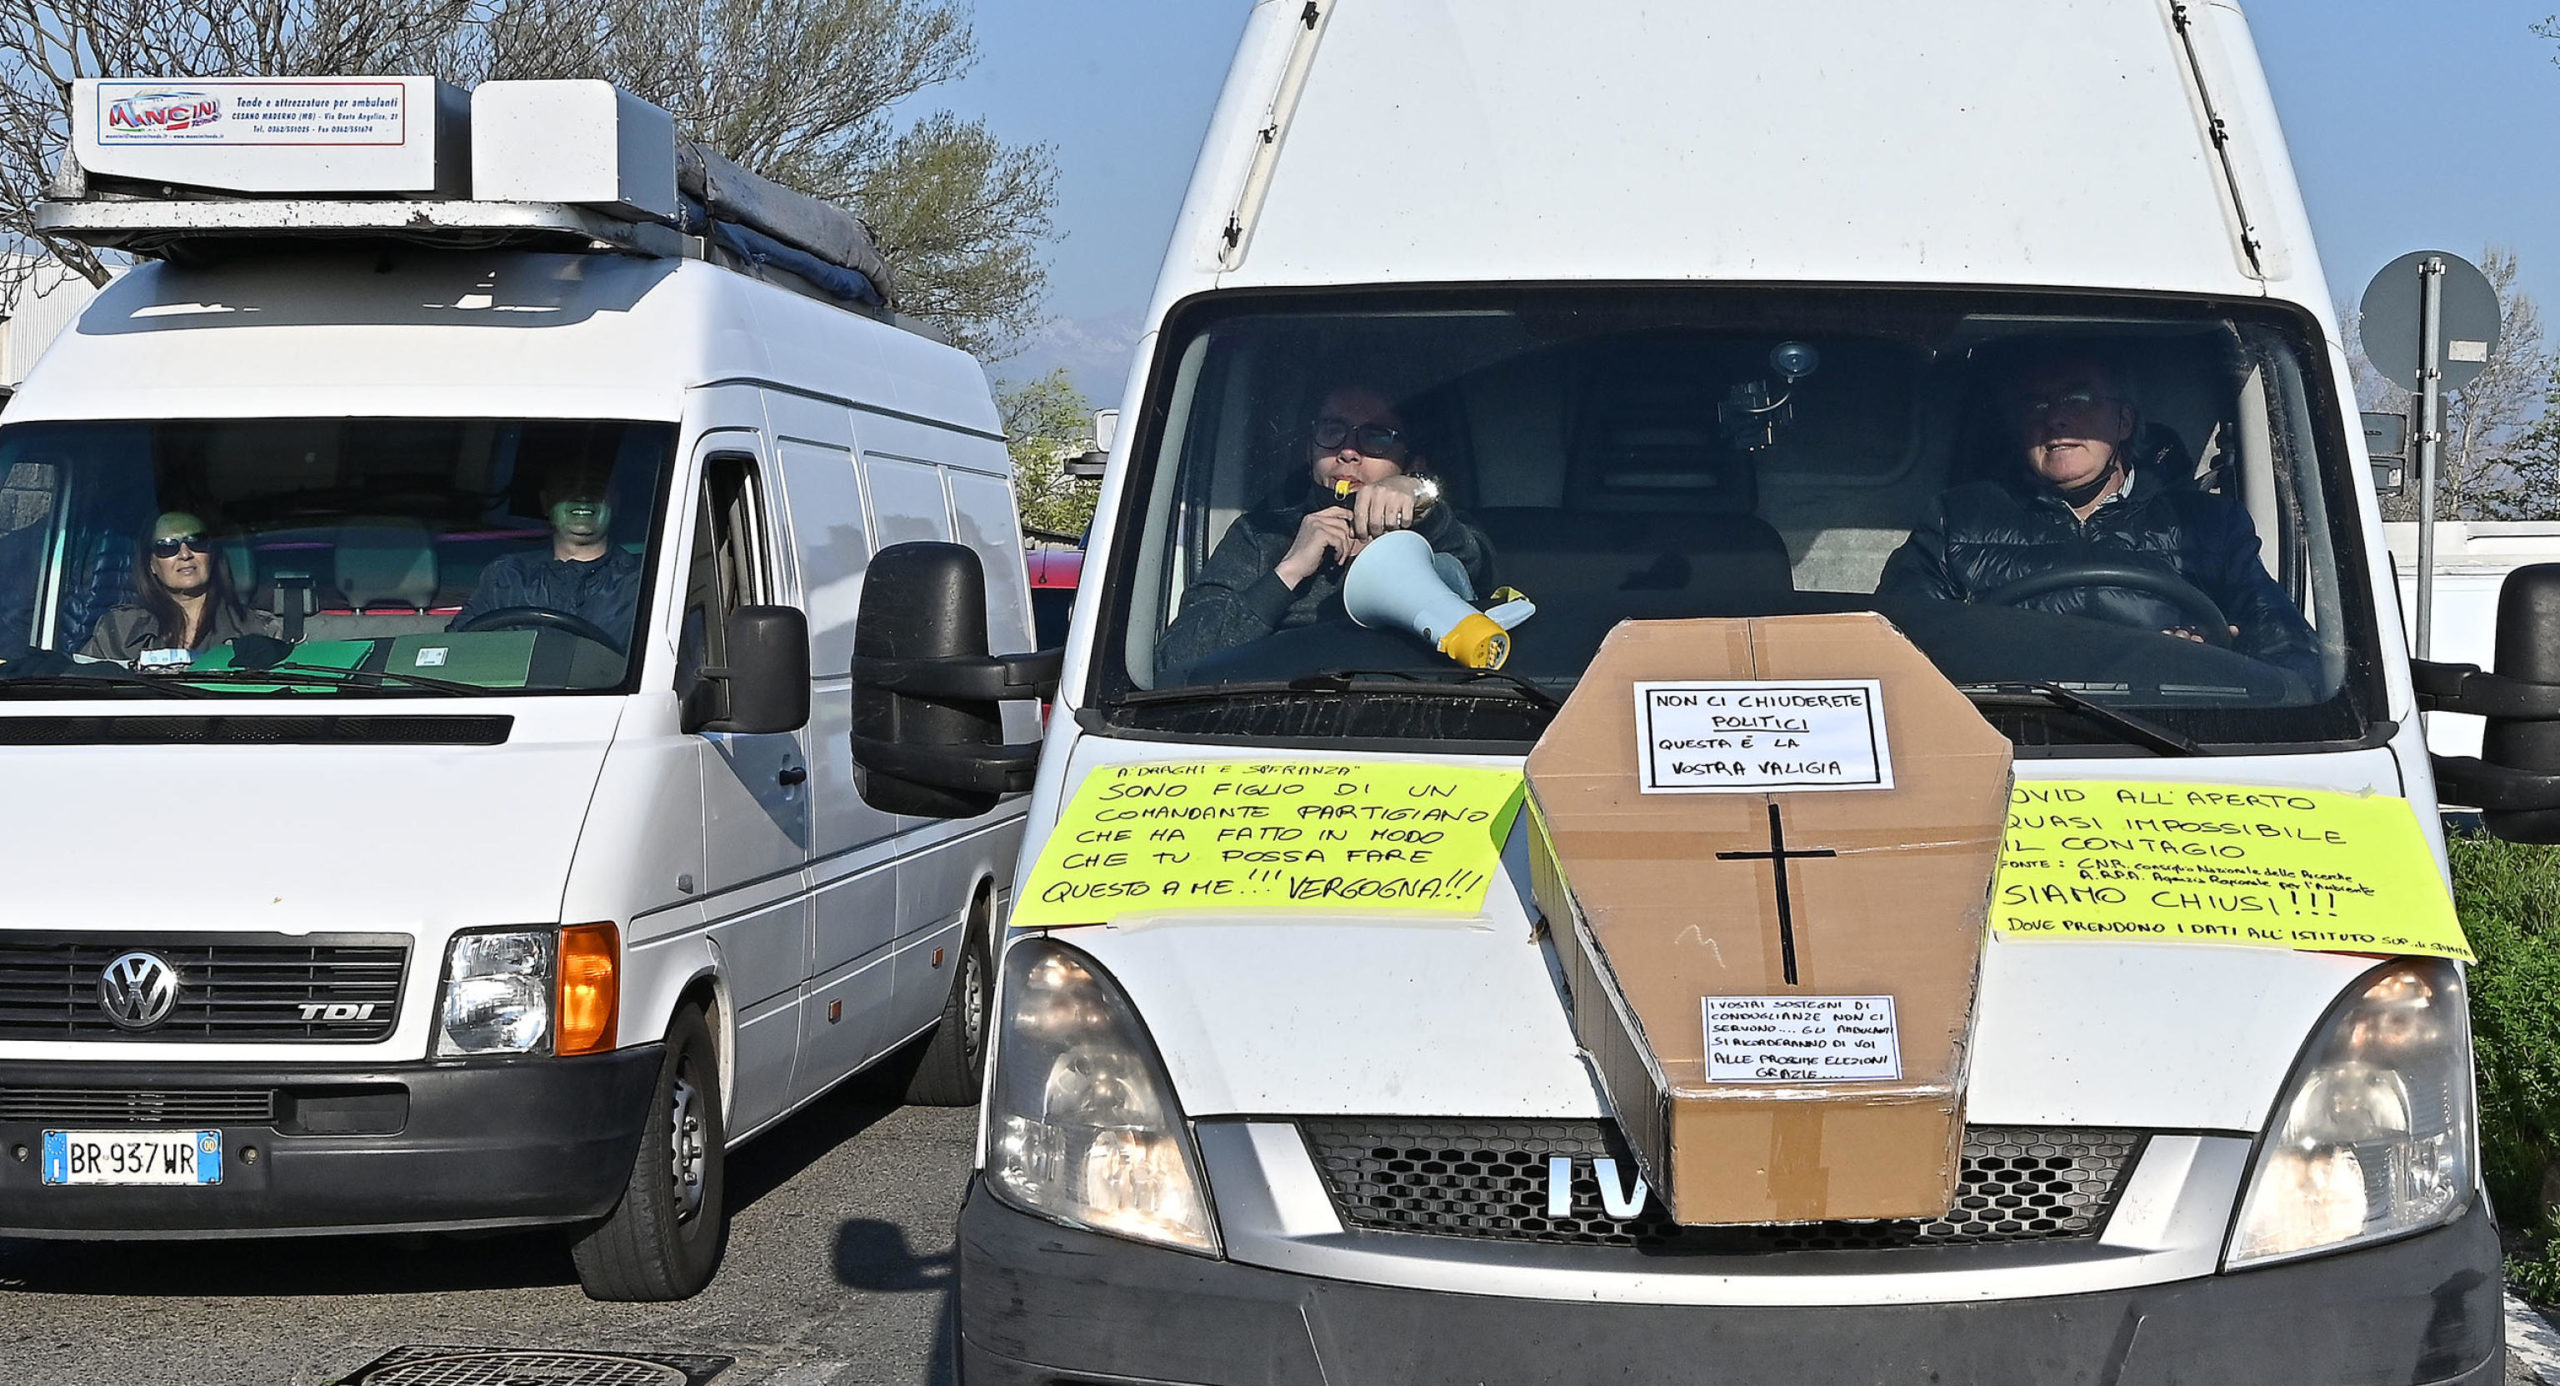 La protesta degli ambulanti con i cartelli sul furgone